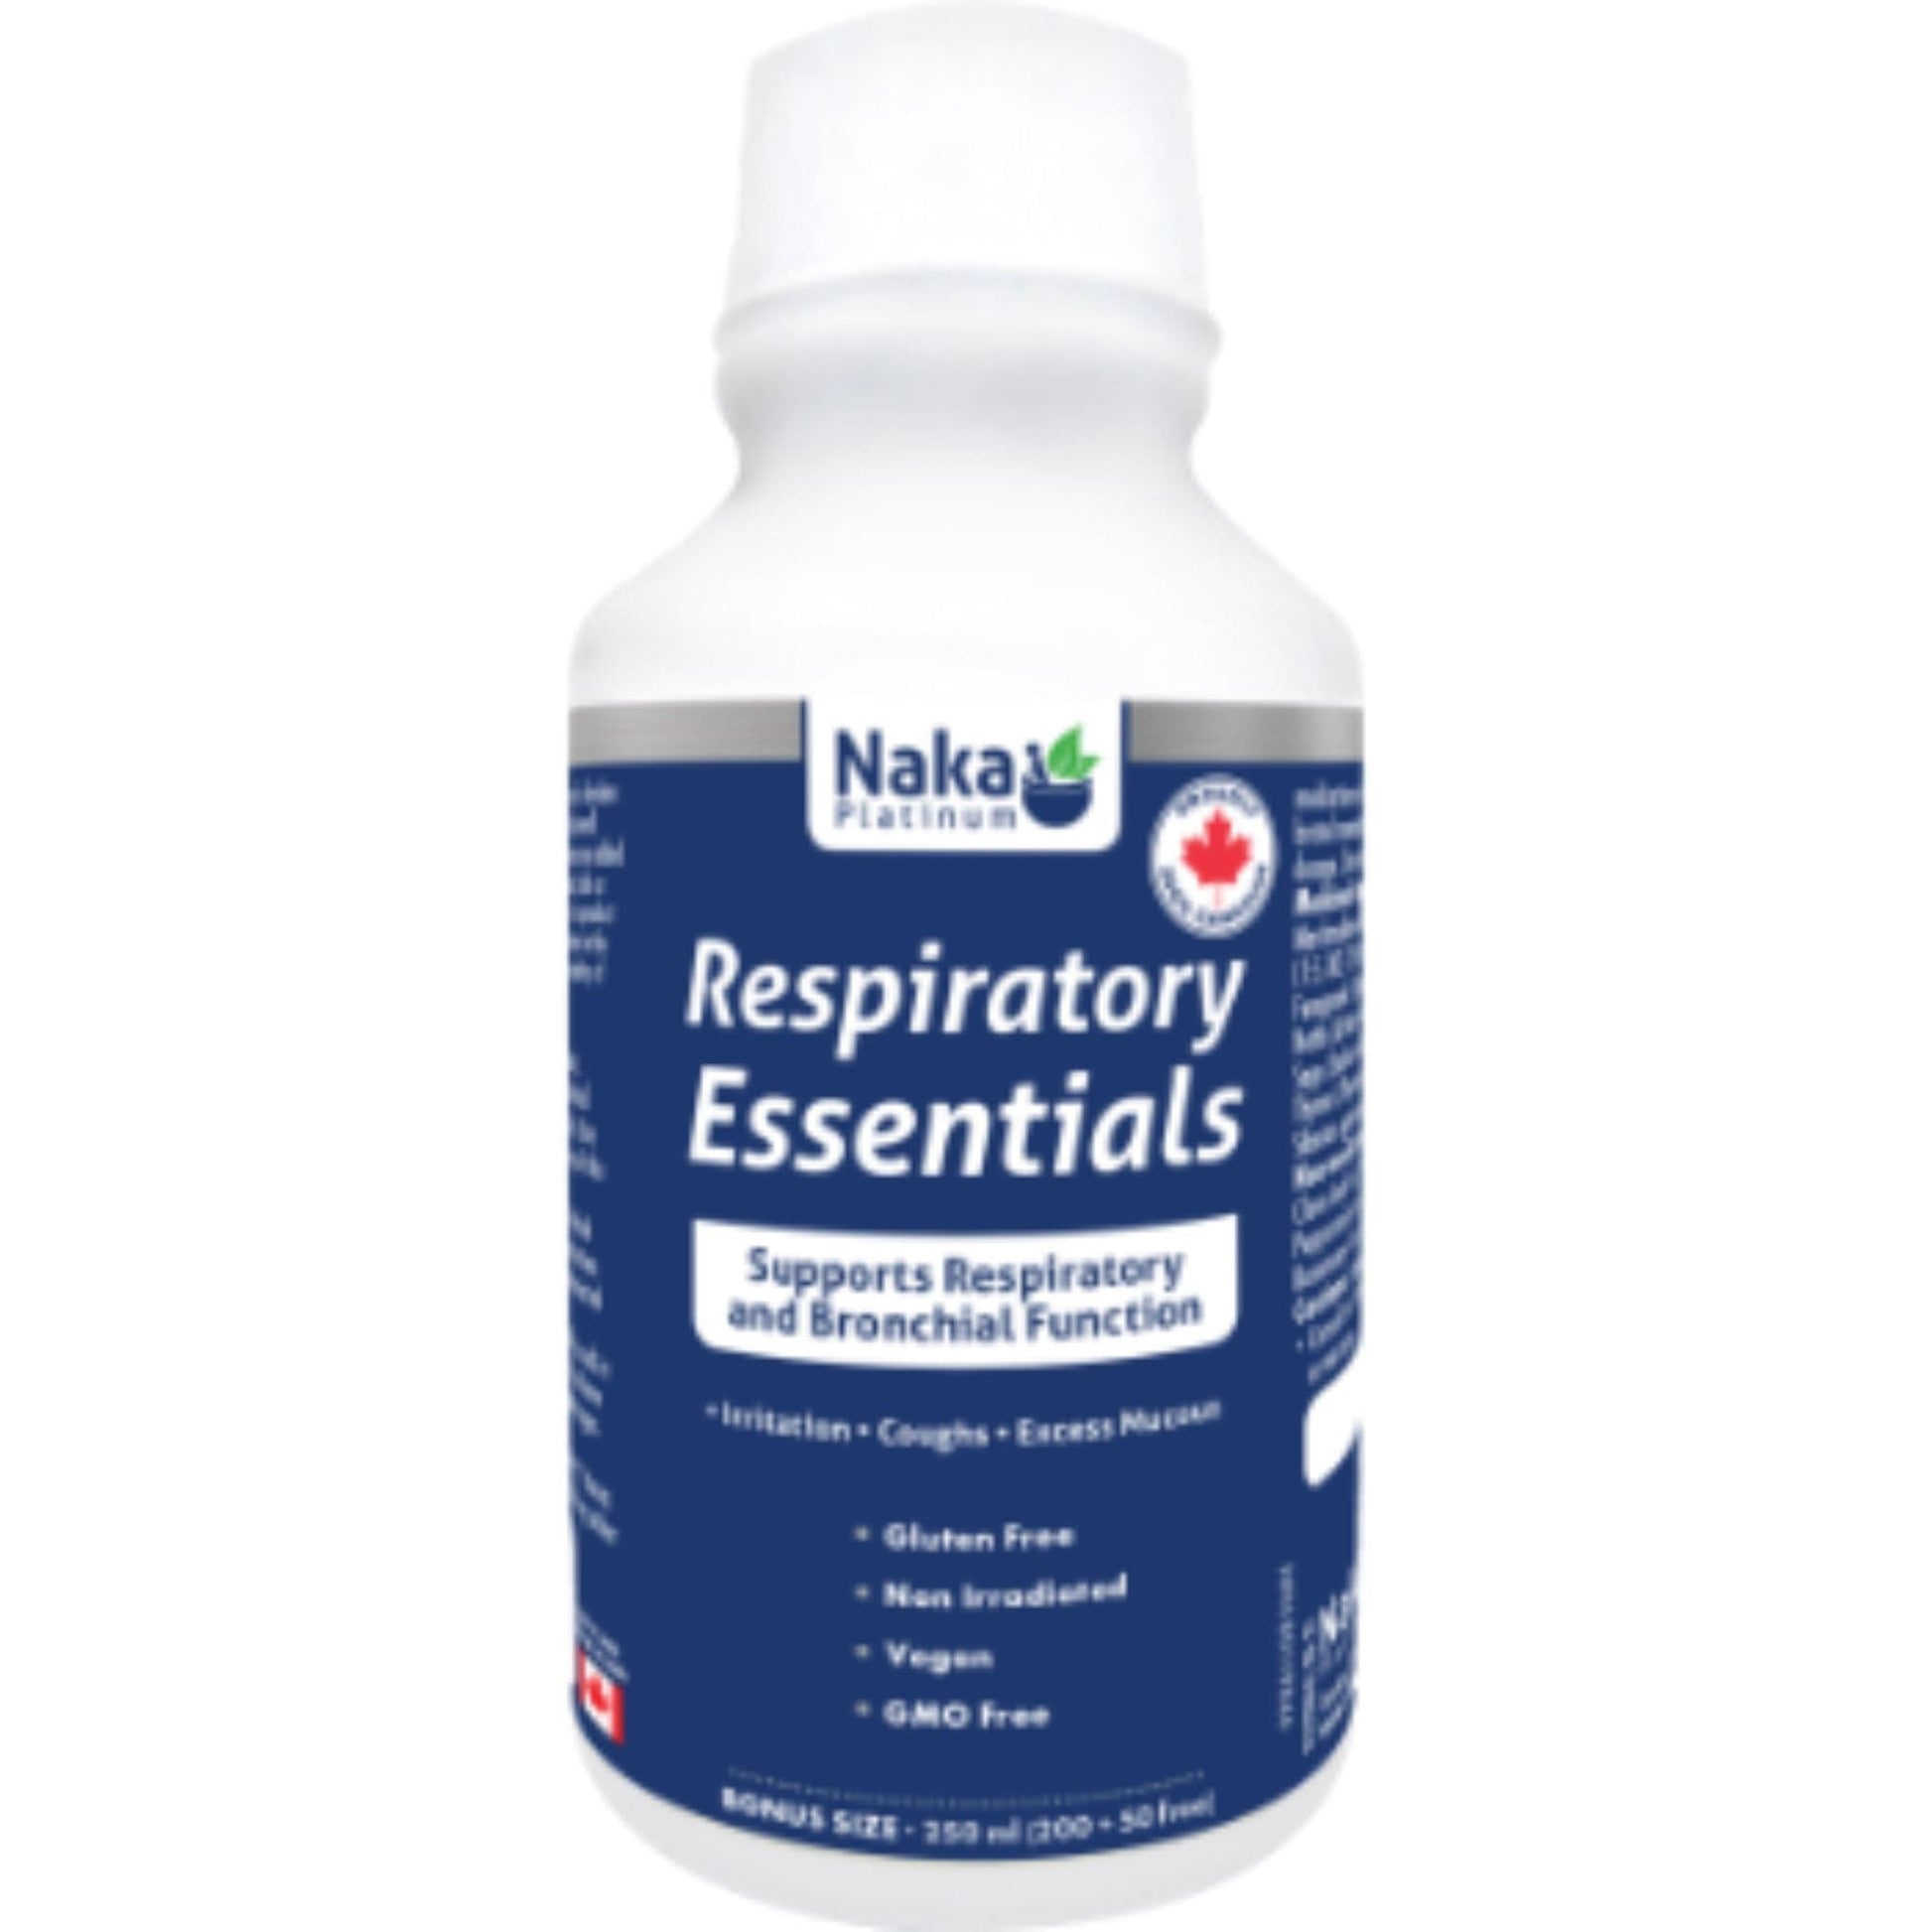 naka-platinum-respiratory-essentials-250ml